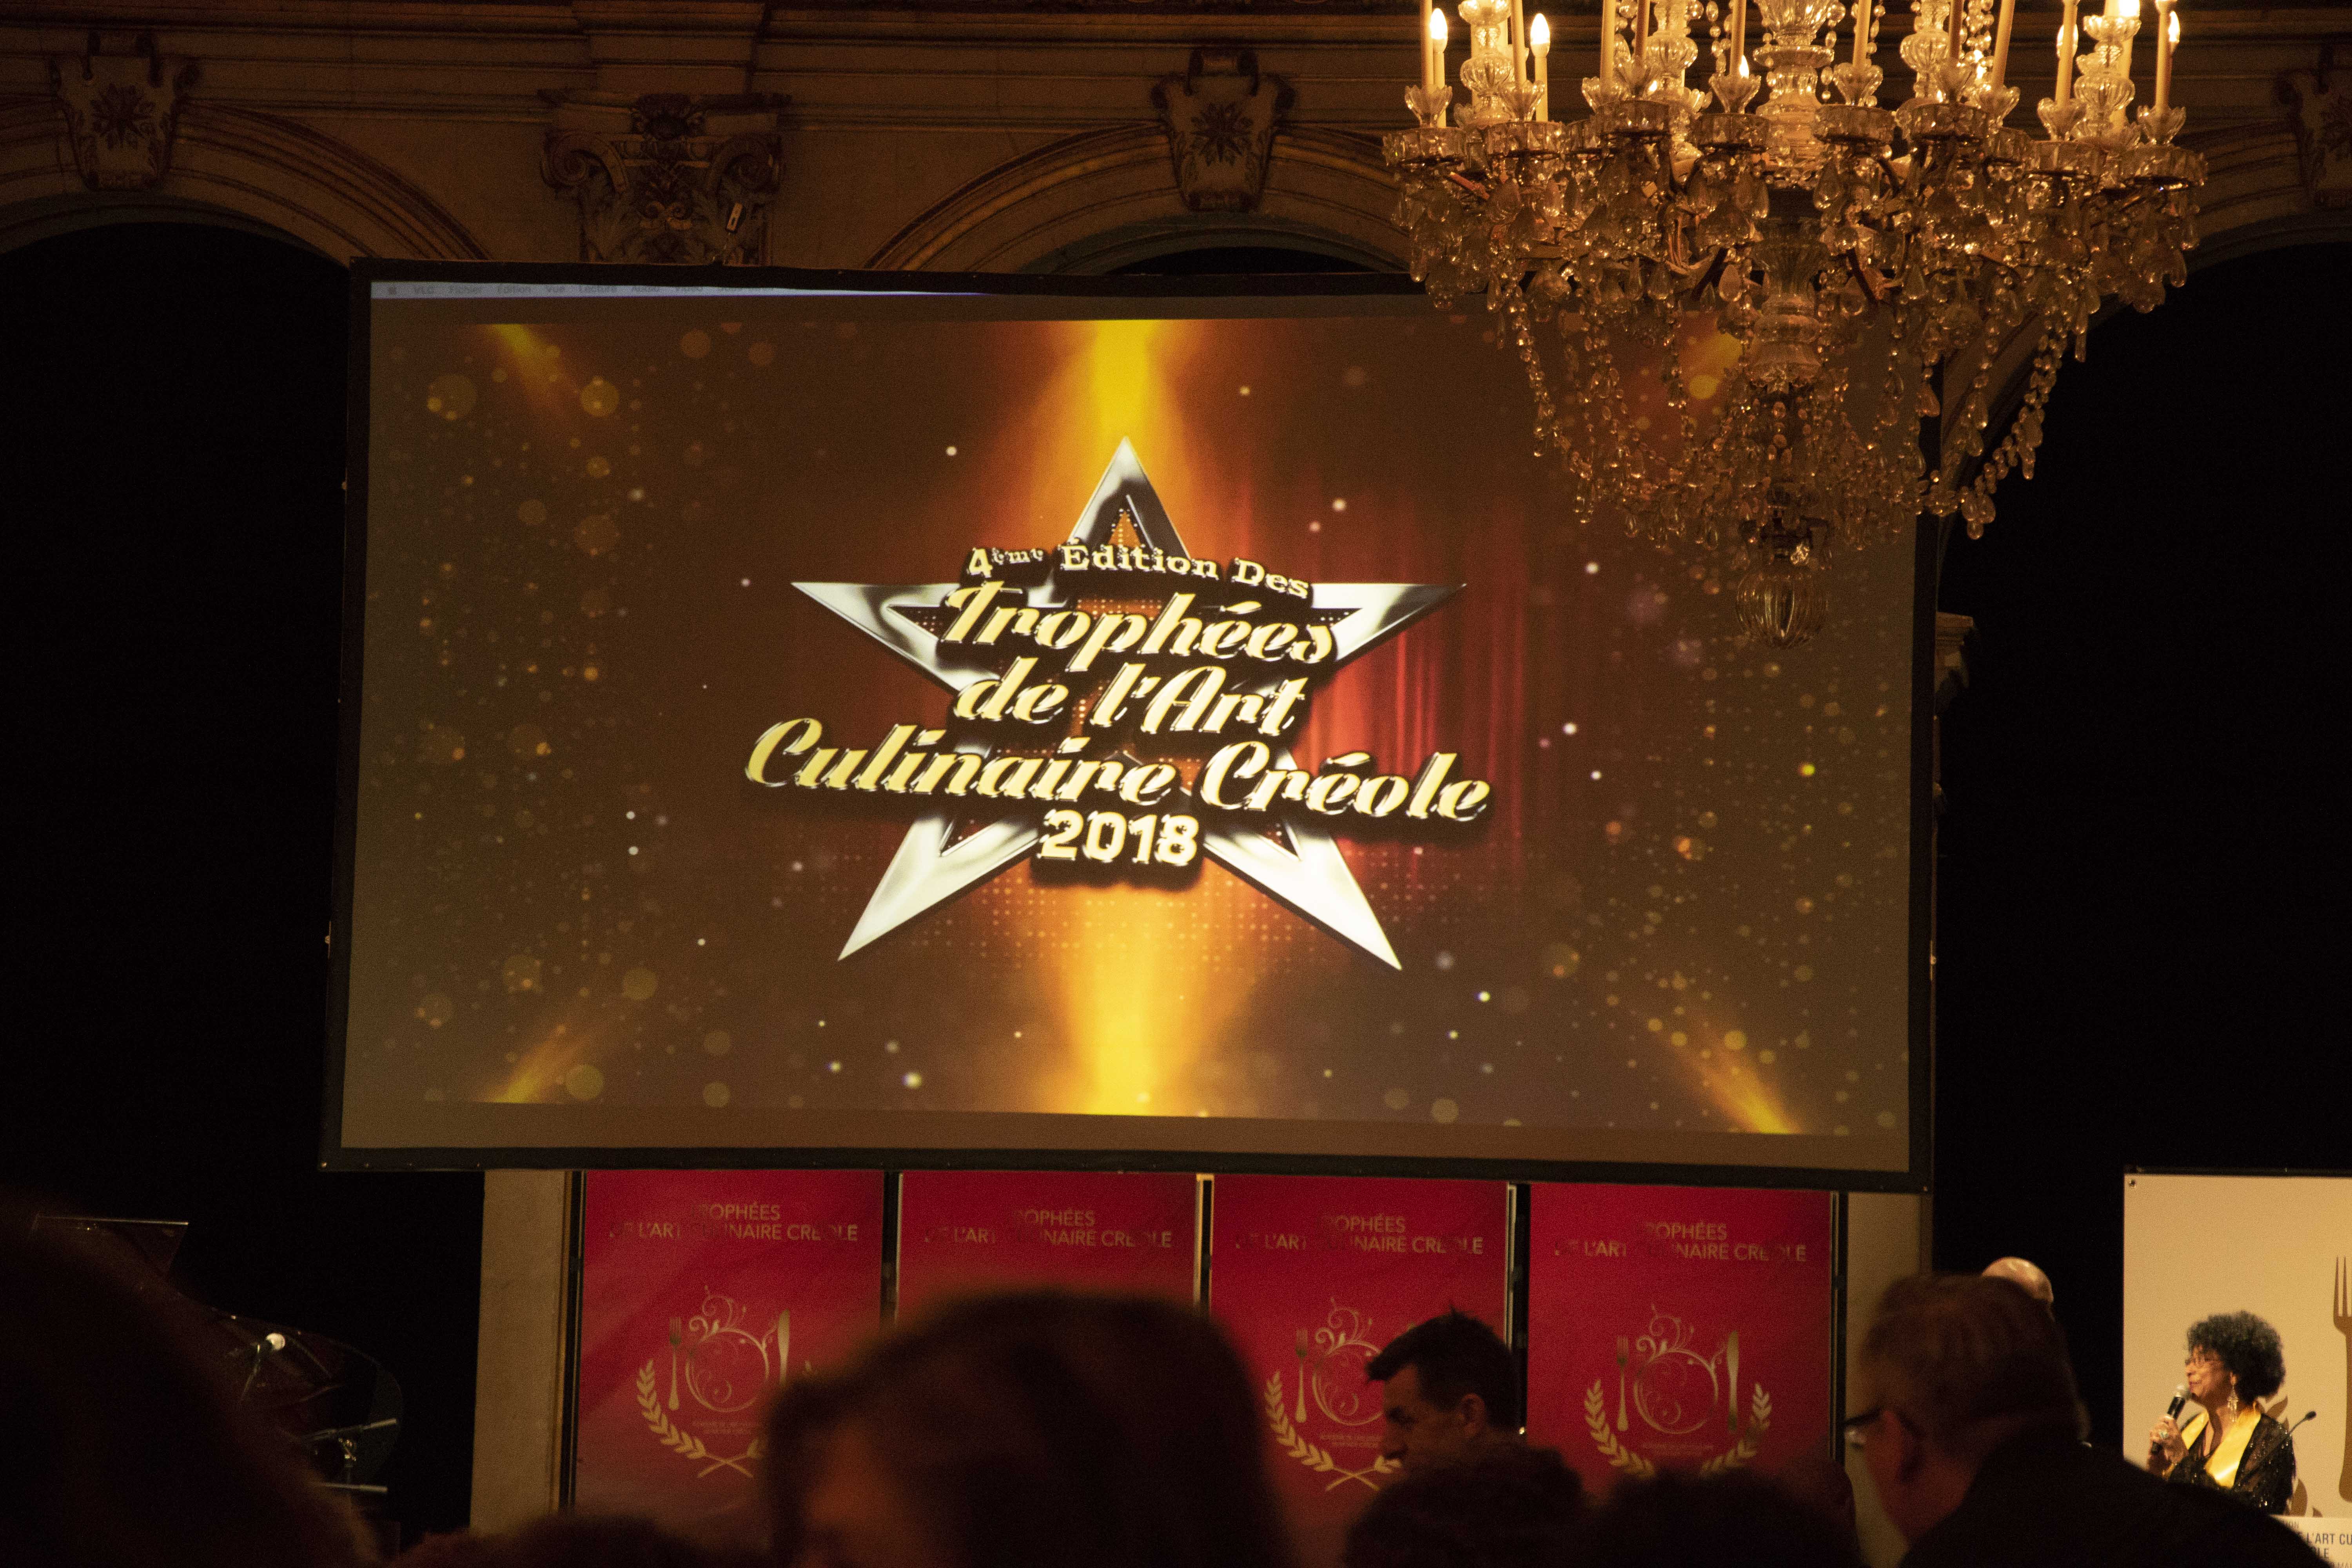 Trophées de l'Art Culinaire Créole 2018 logo